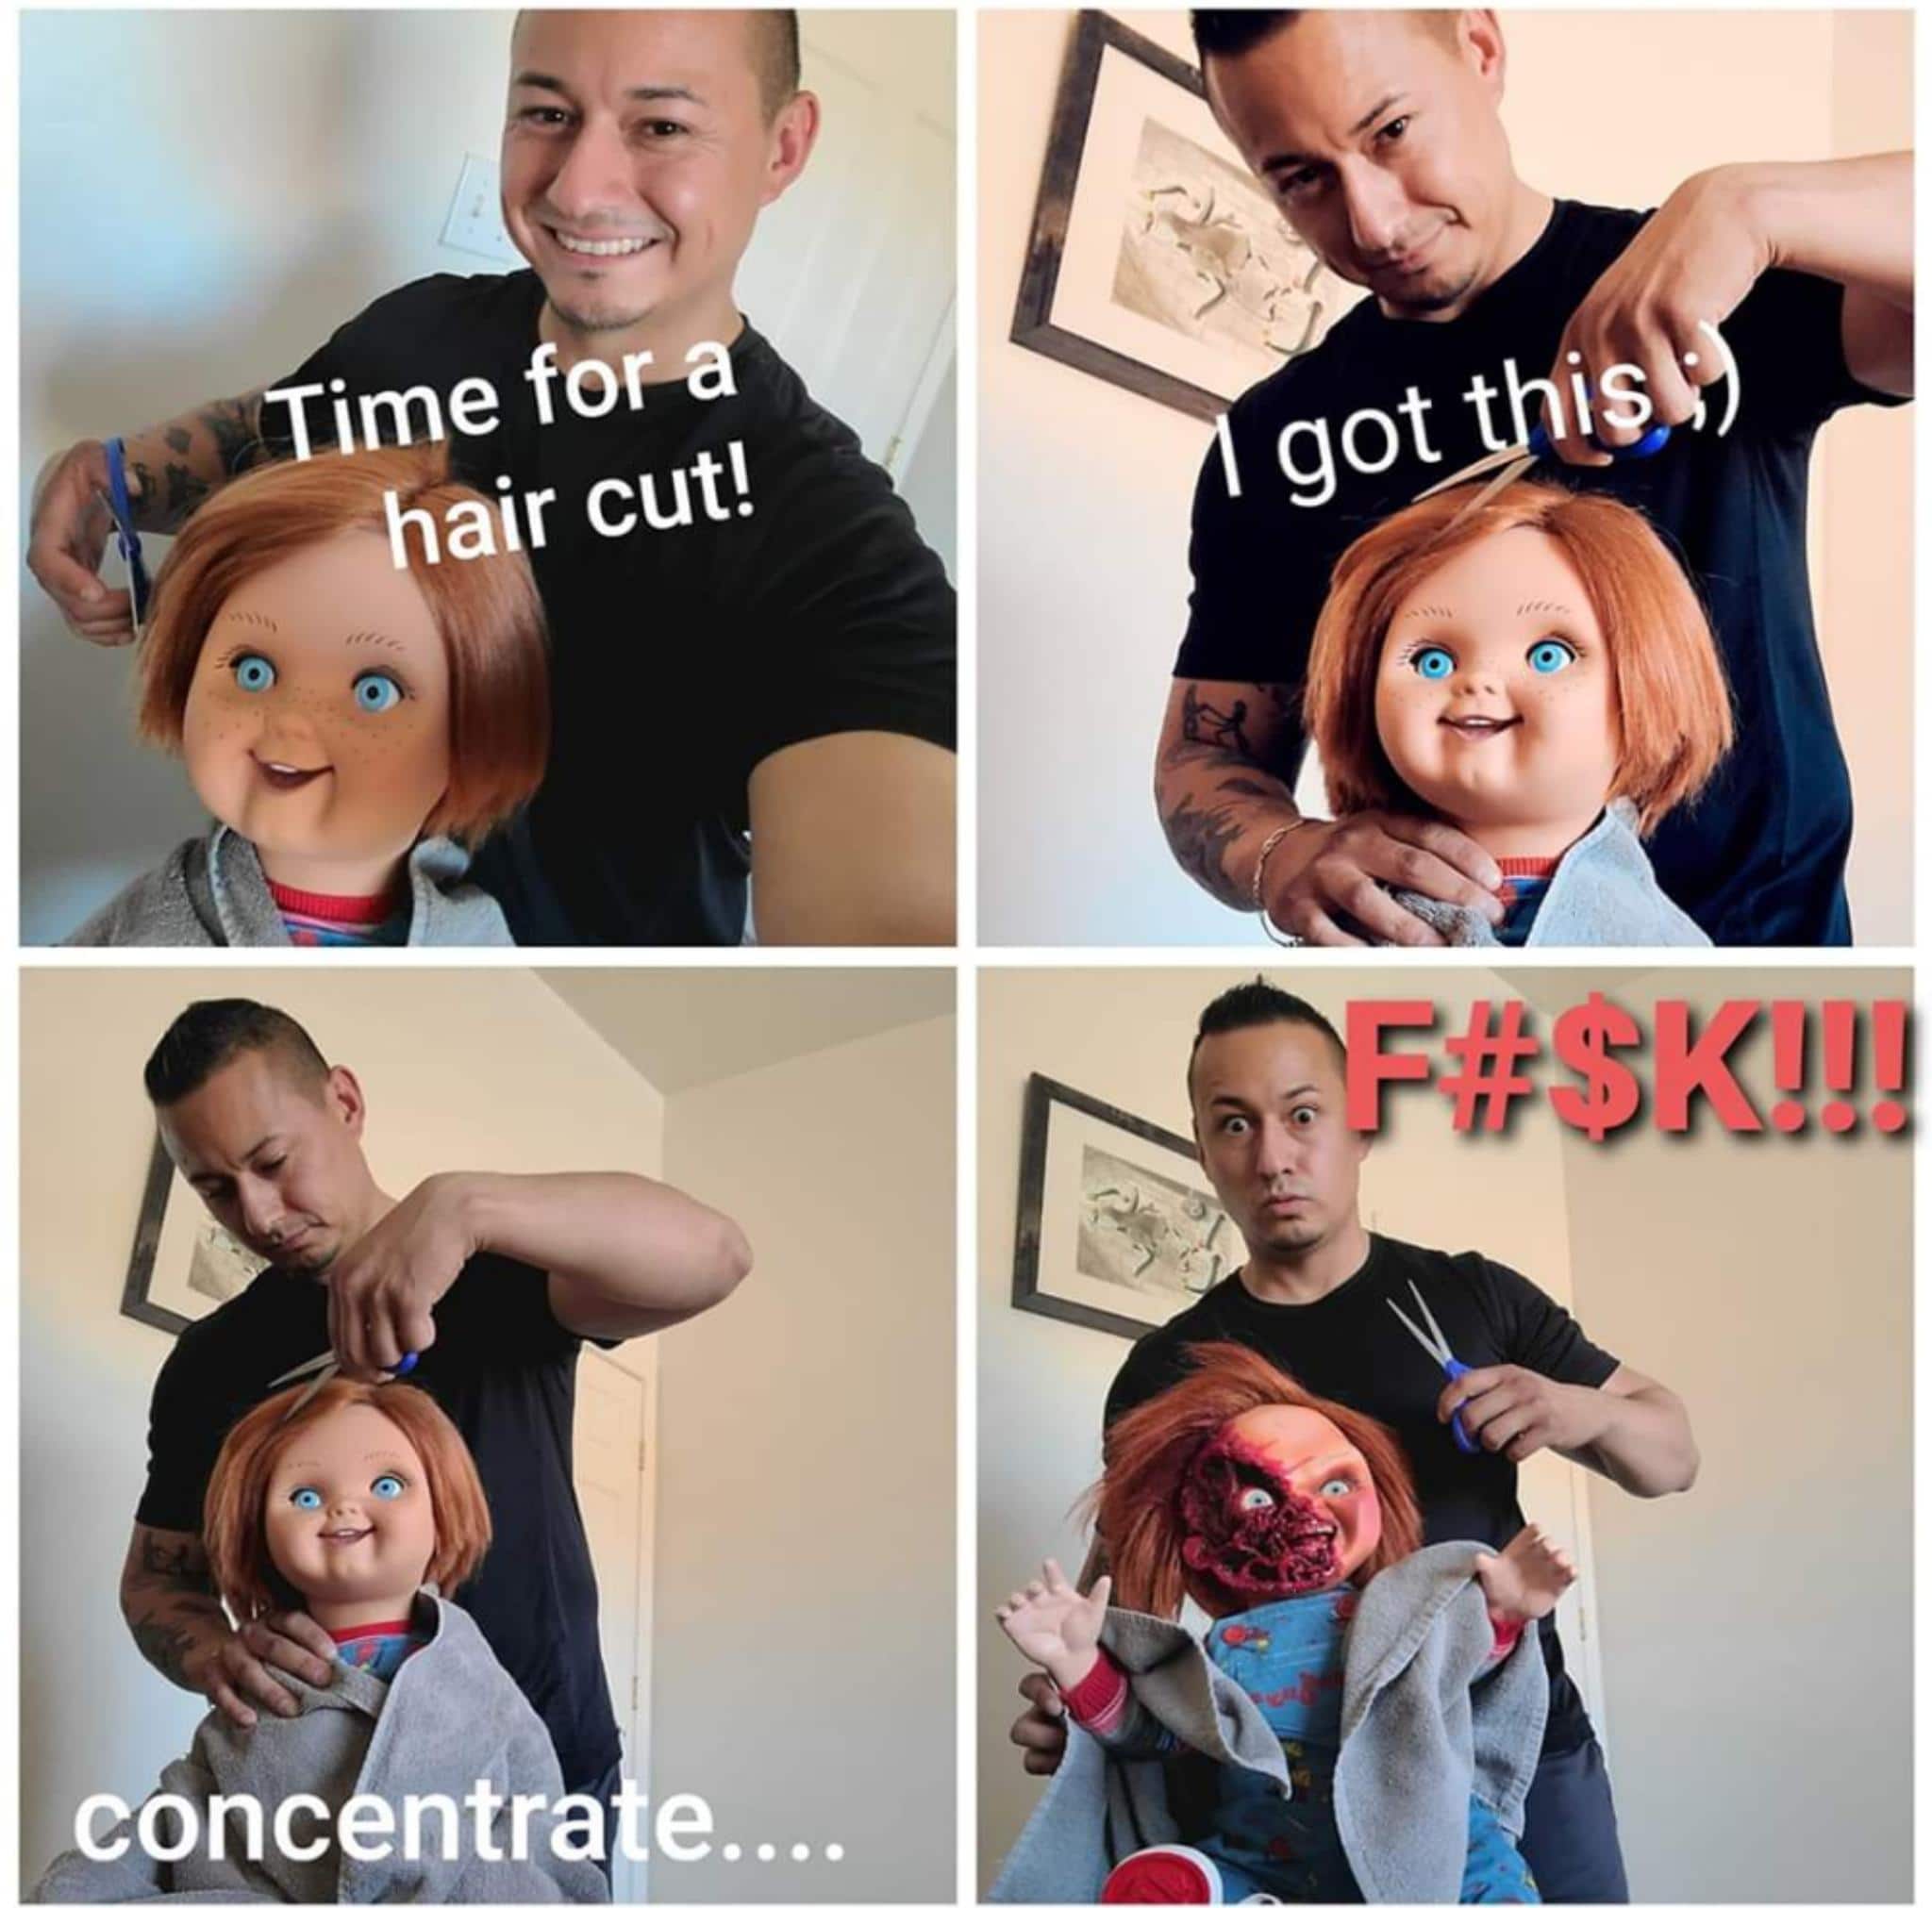 Cringe, Haircuts cringe memes Cringe, Haircuts text: conc ntr e 